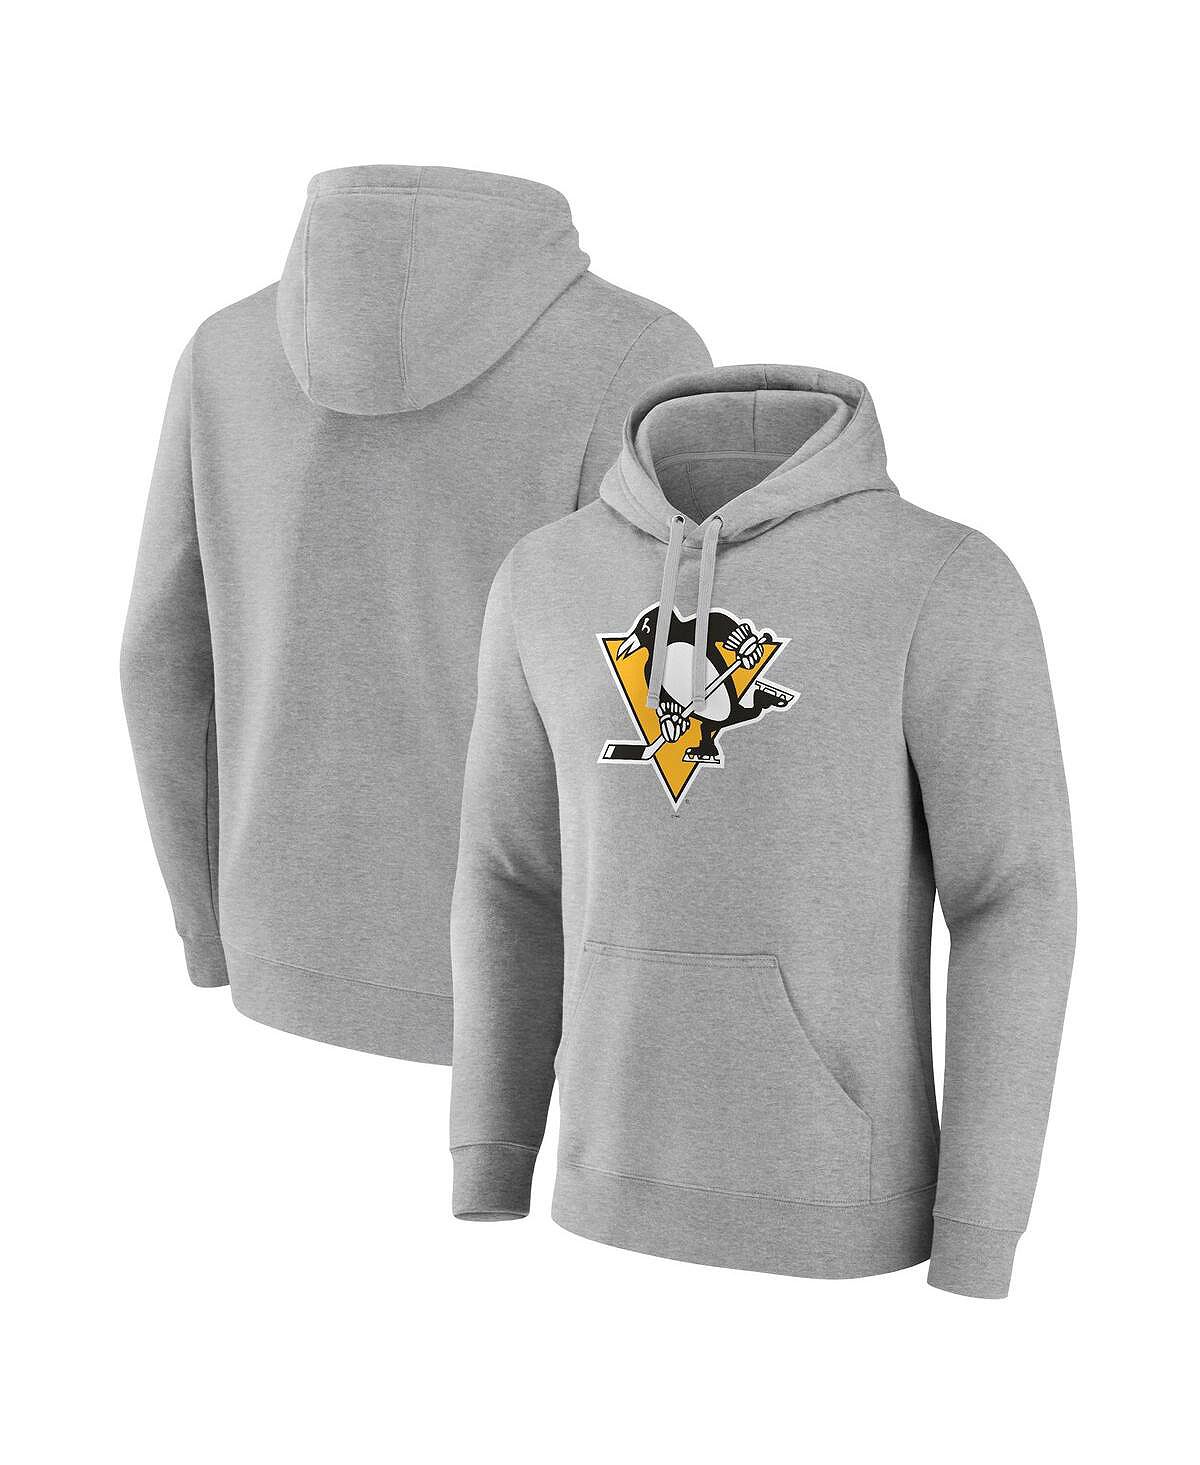 цена Мужская фирменная толстовка с капюшоном с логотипом heather grey pittsburgh penguins primary logo Fanatics, мульти